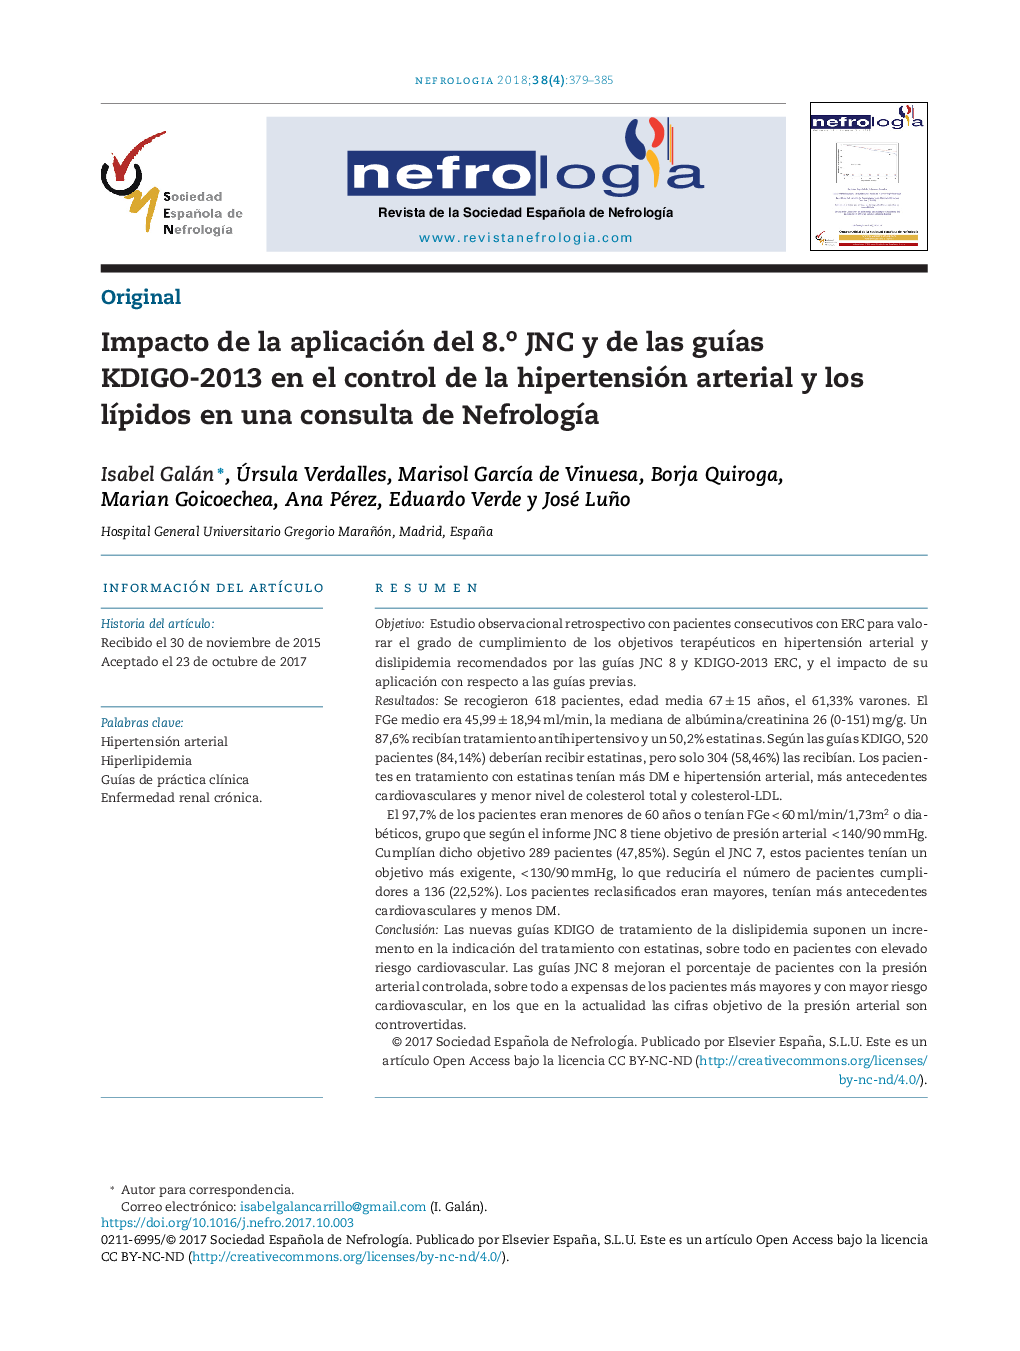 Impacto de la aplicación del 8.o JNC y de las guÃ­as KDIGO-2013 en el control de la hipertensión arterial y los lÃ­pidos en una consulta de NefrologÃ­a